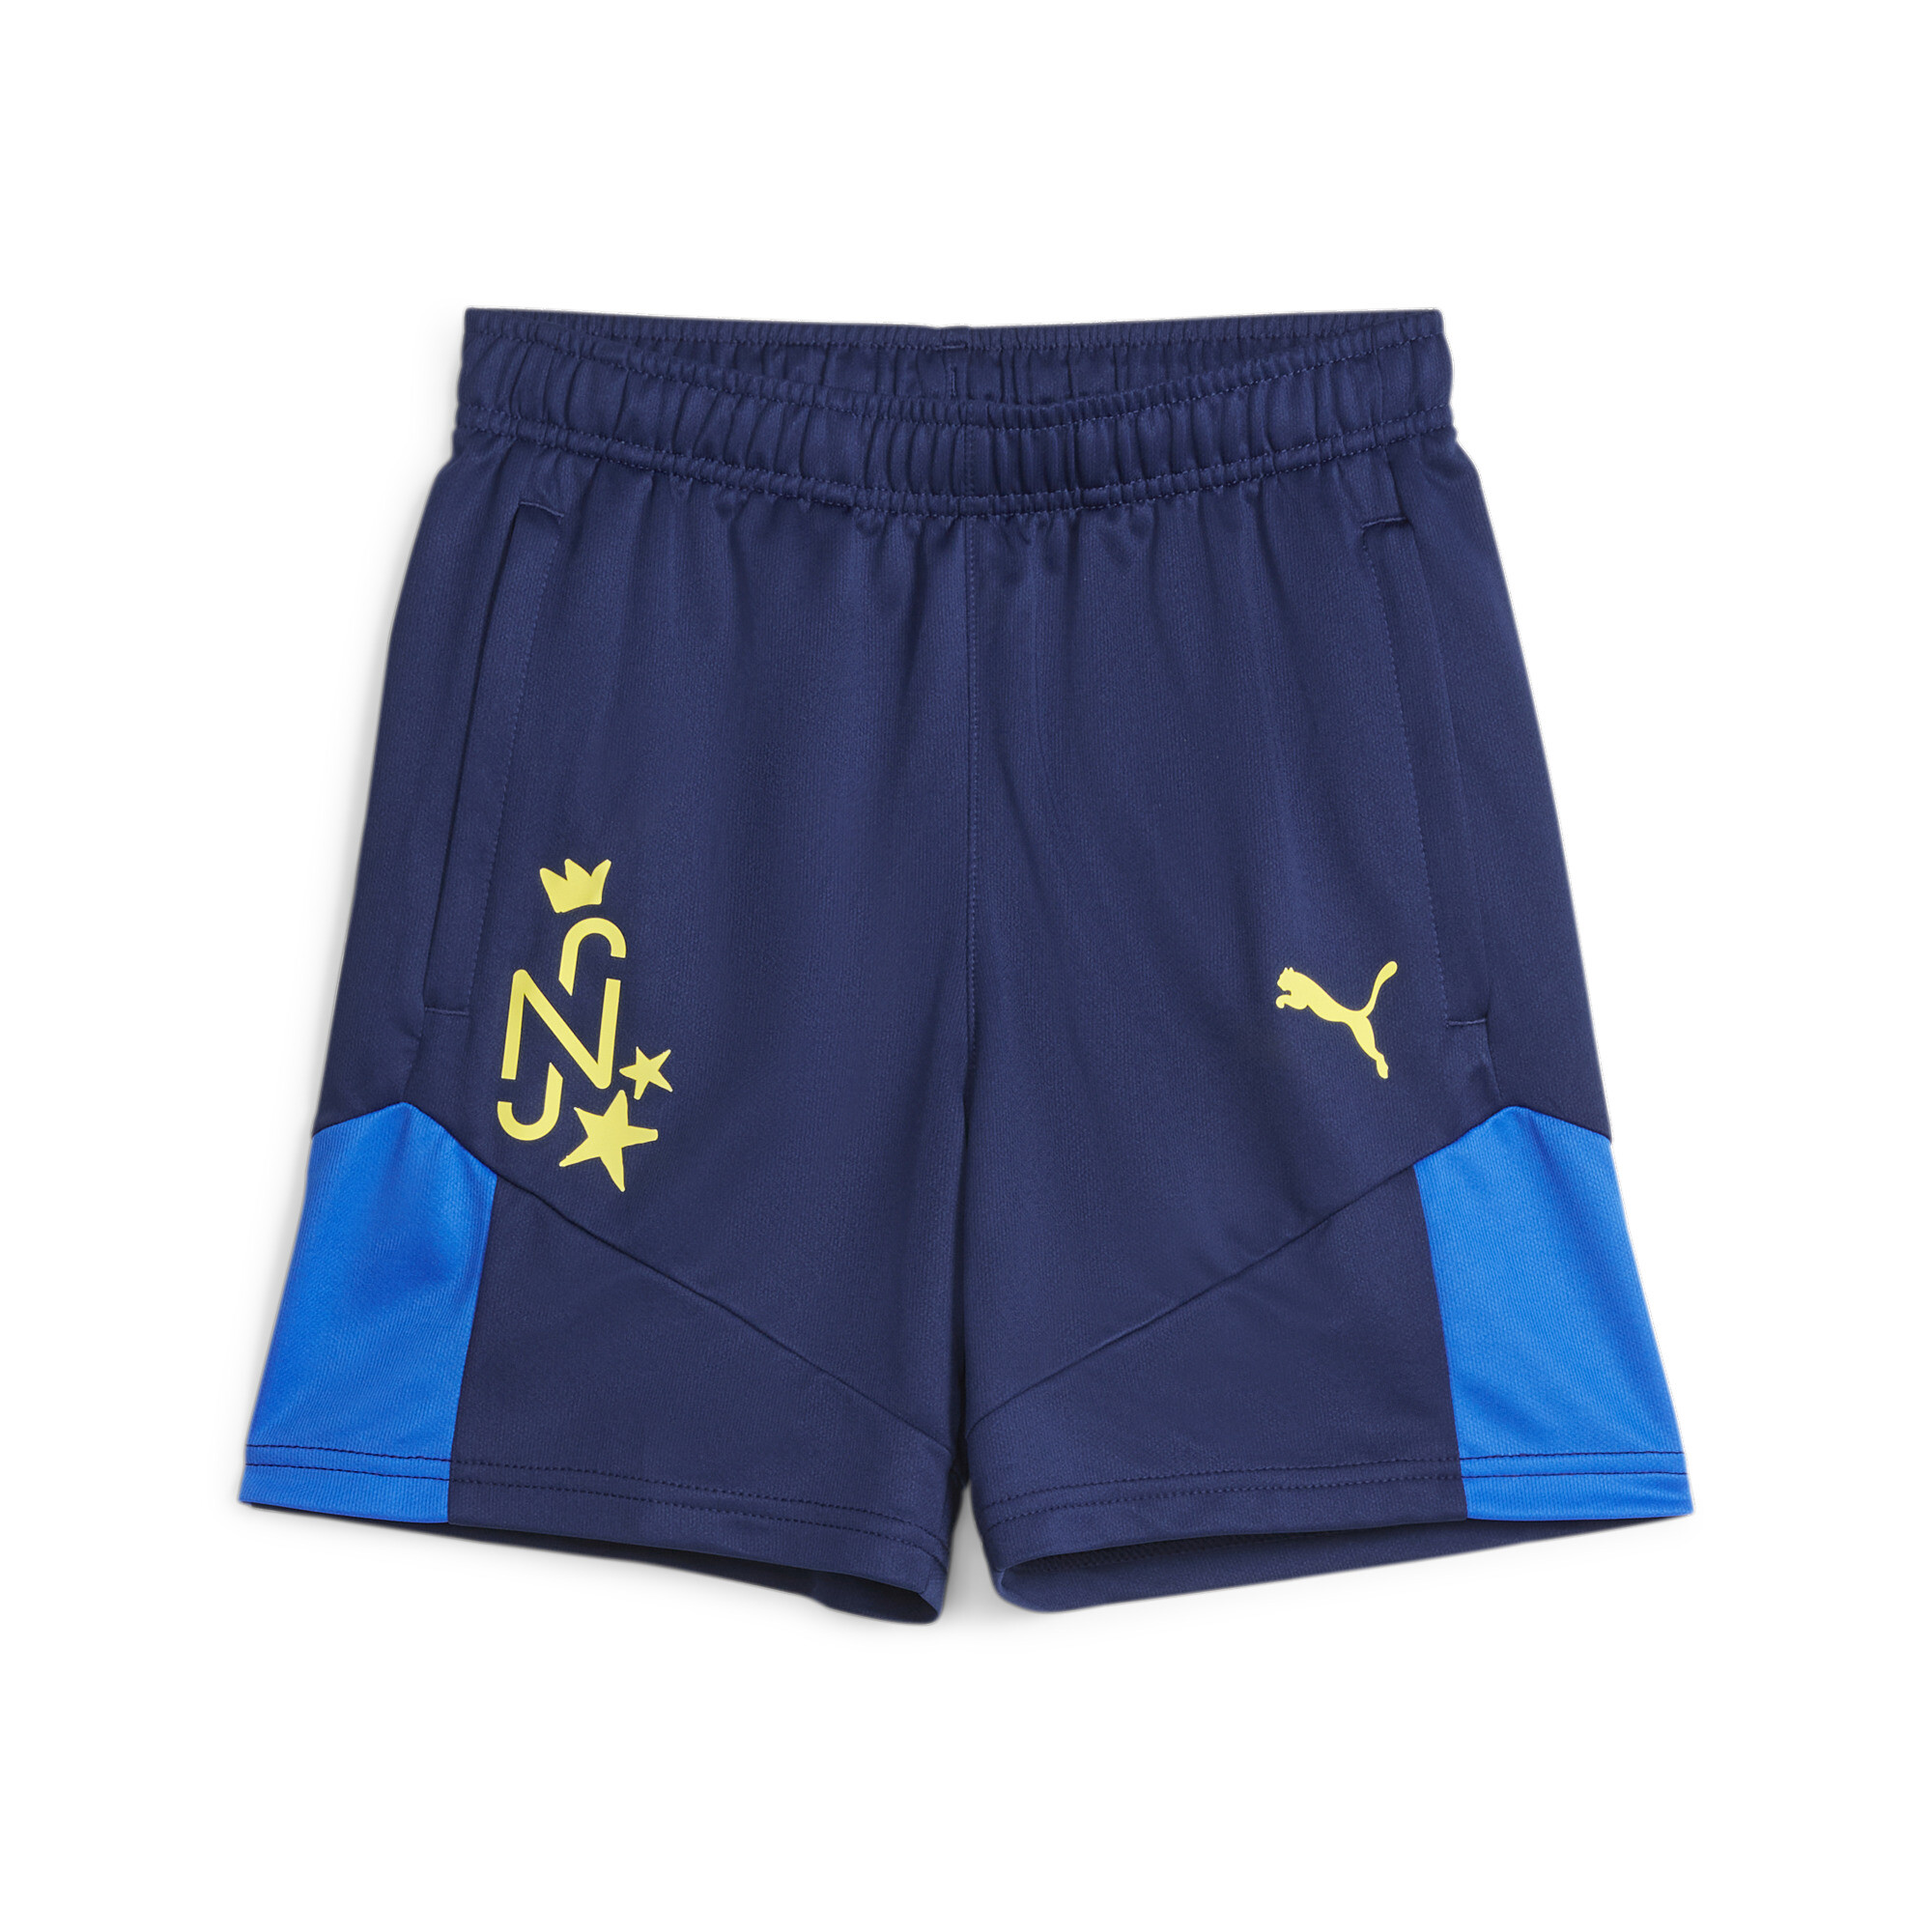 PUMA Neymar Jr Football Shorts In Blue, Size 15-16 Youth